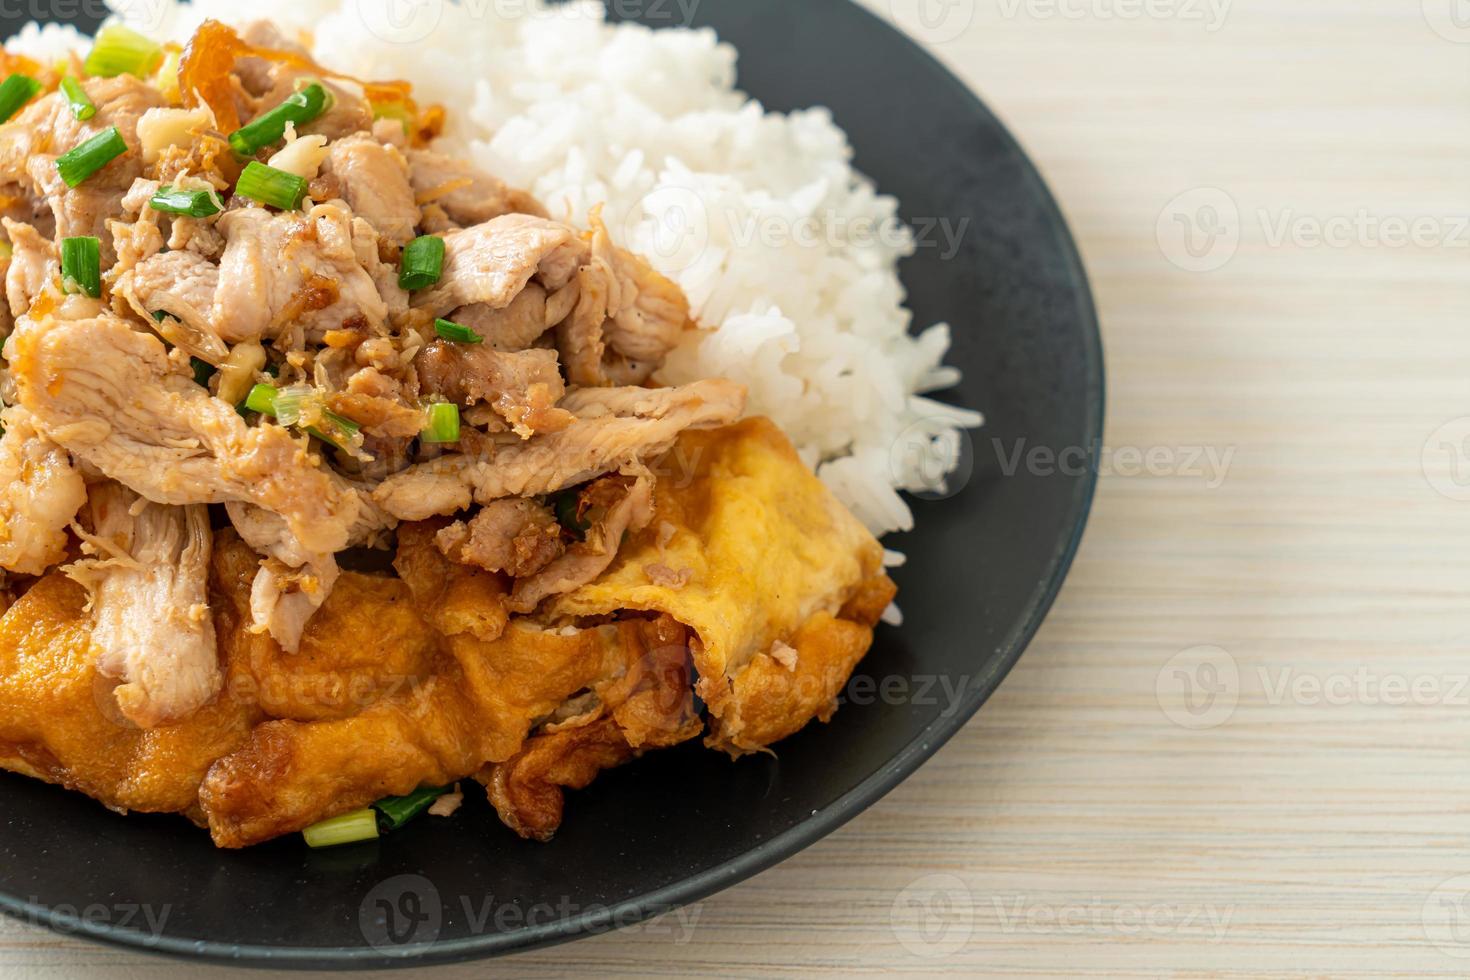 uppstekt fläsk med vitlök och ägg toppat på ris - asiatisk matstil foto